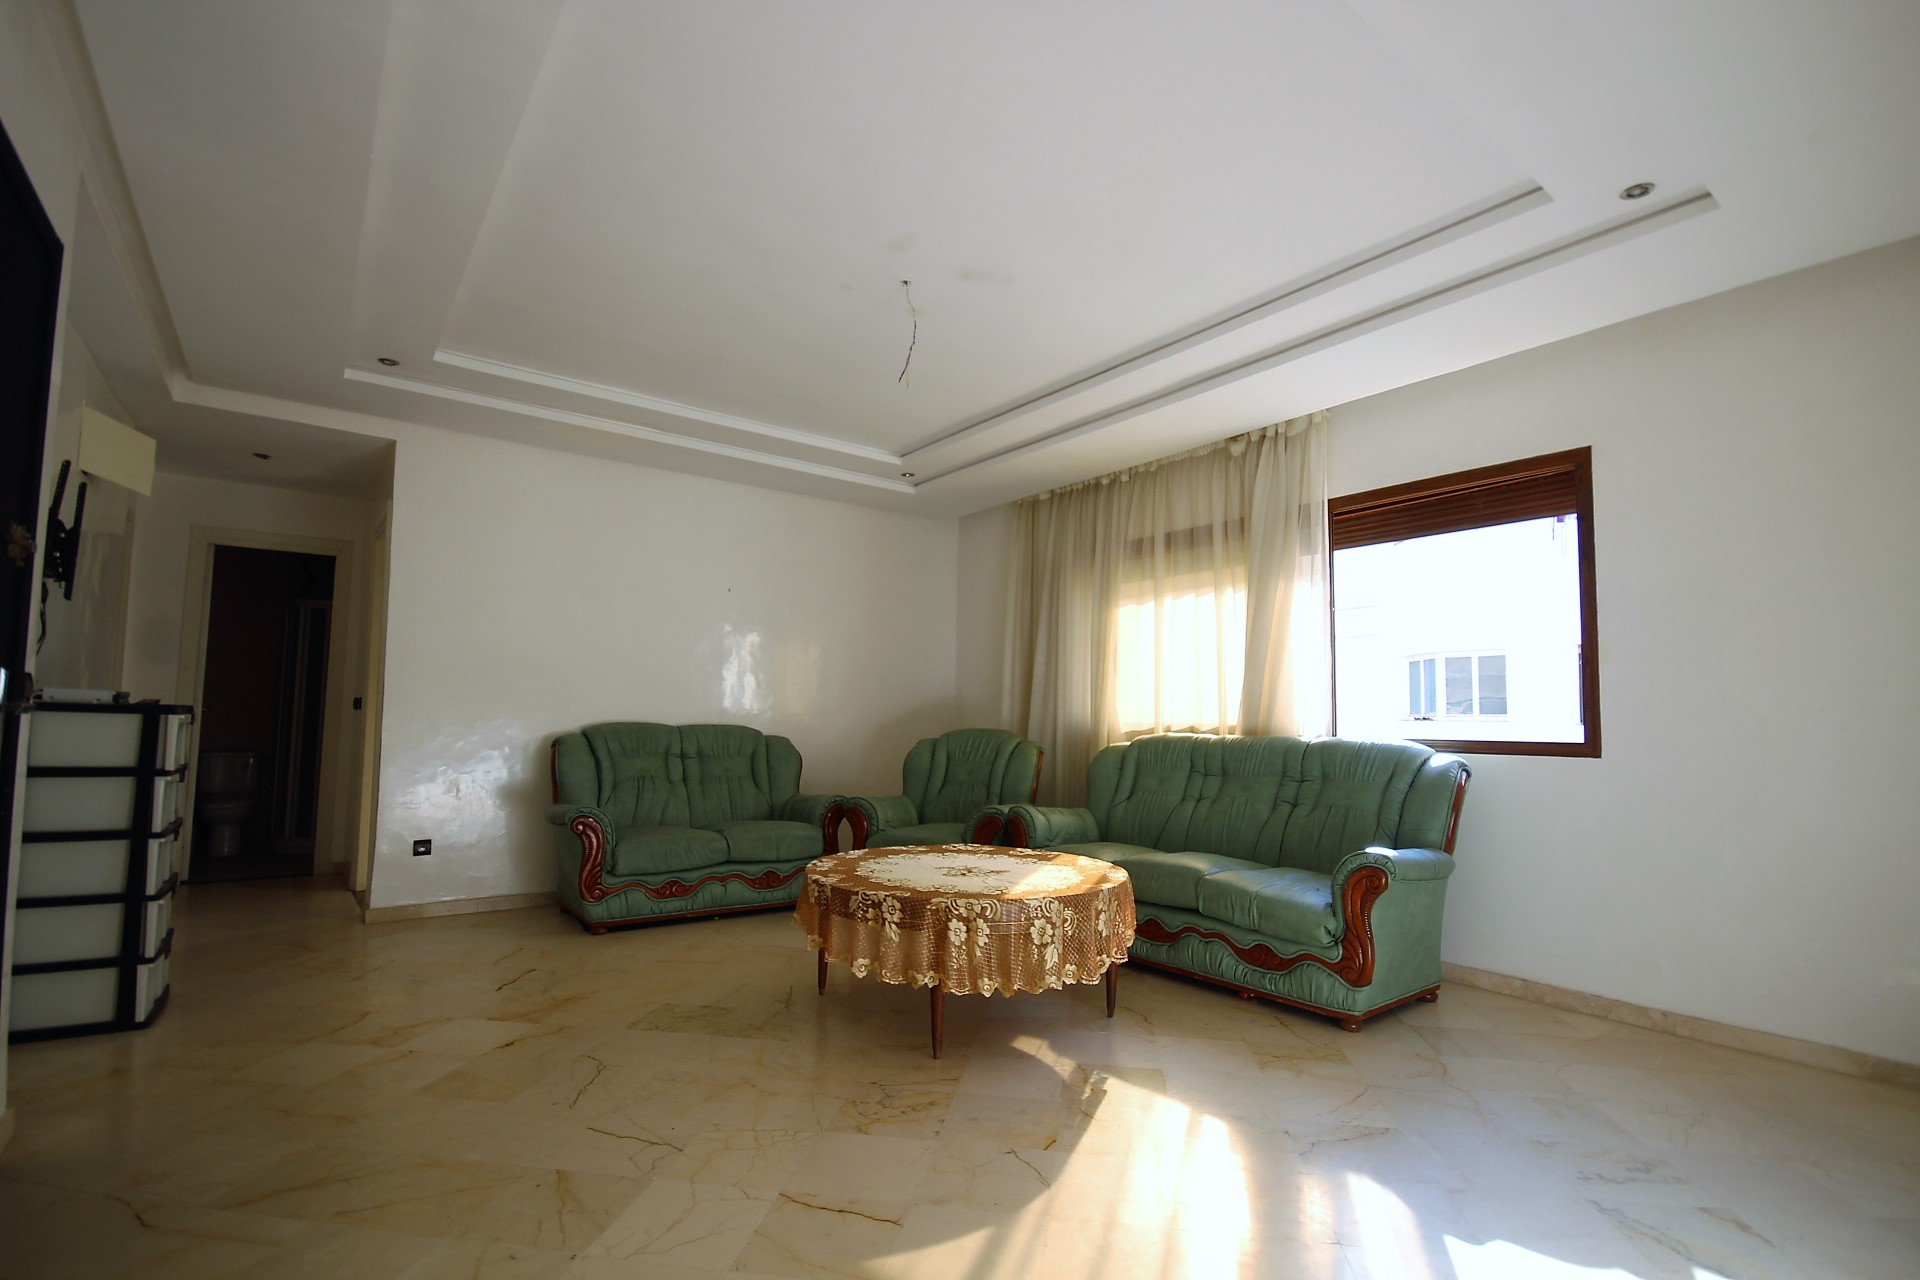 Maroc, Casablanca, Bourgogne              (Secteur de Venezia ice)                    Vend appartement meublé et equipé de 85 m² ensoleillé récent en étage élevé